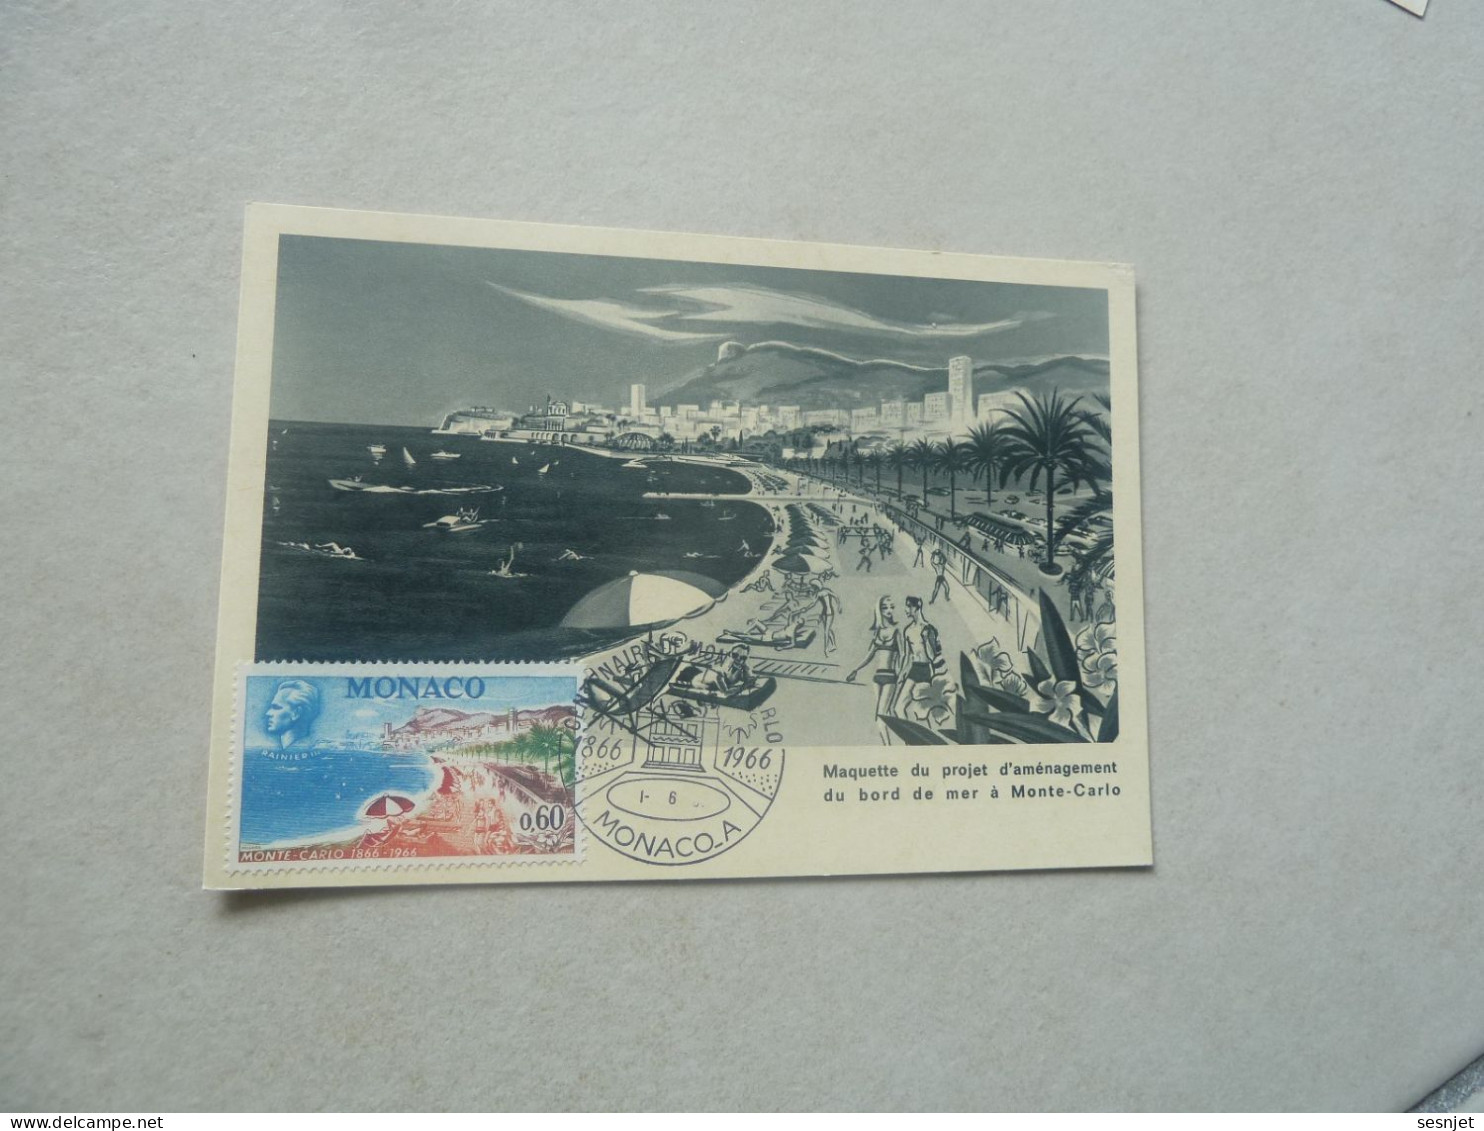 Monaco - Maquette Du Projet D'Aménagement - 0f.60 - Yt 694 - Carte Premier Jour D'Emission - Année 1966 - - Cartoline Maximum